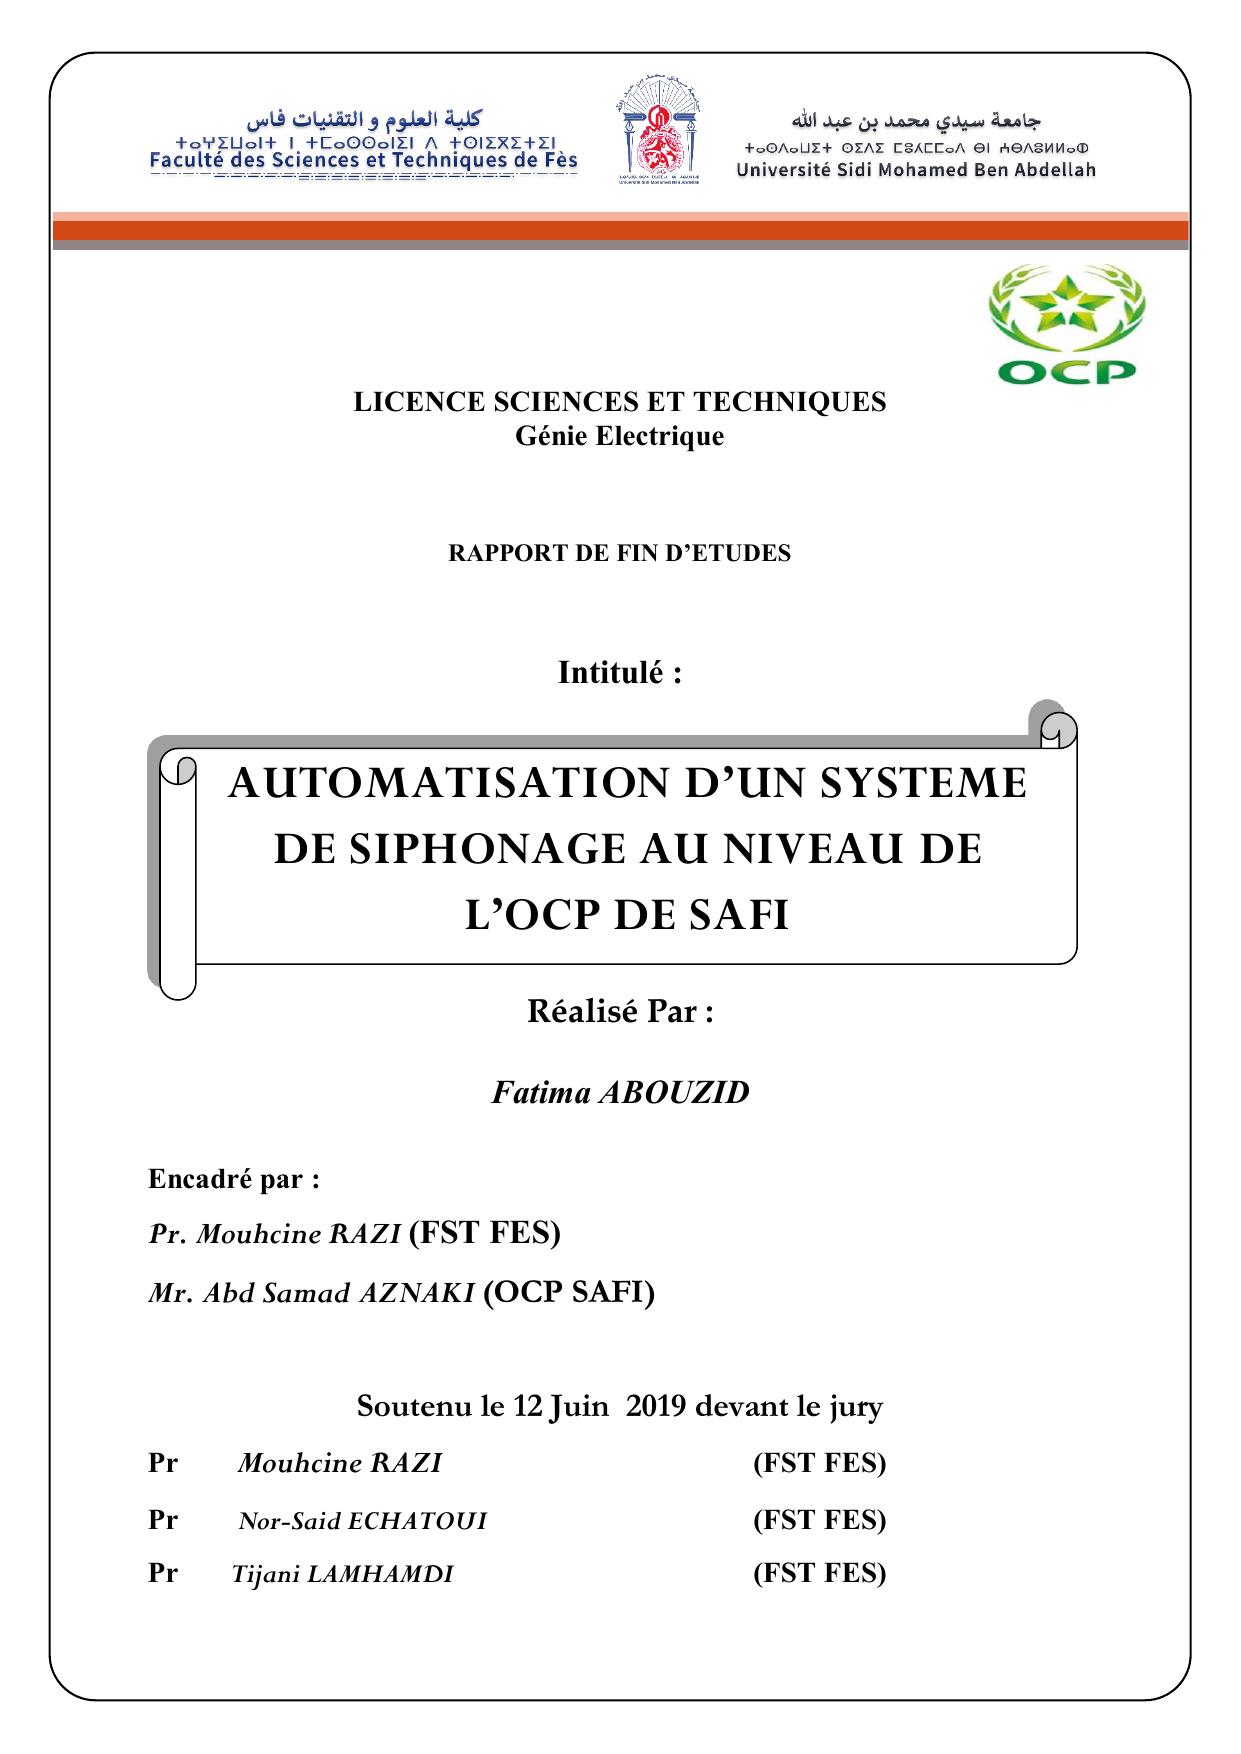 AUTOMATISATION D’UN SYSTEME DE SIPHONAGE AU NIVEAU DE L’OCP DE SAFIT